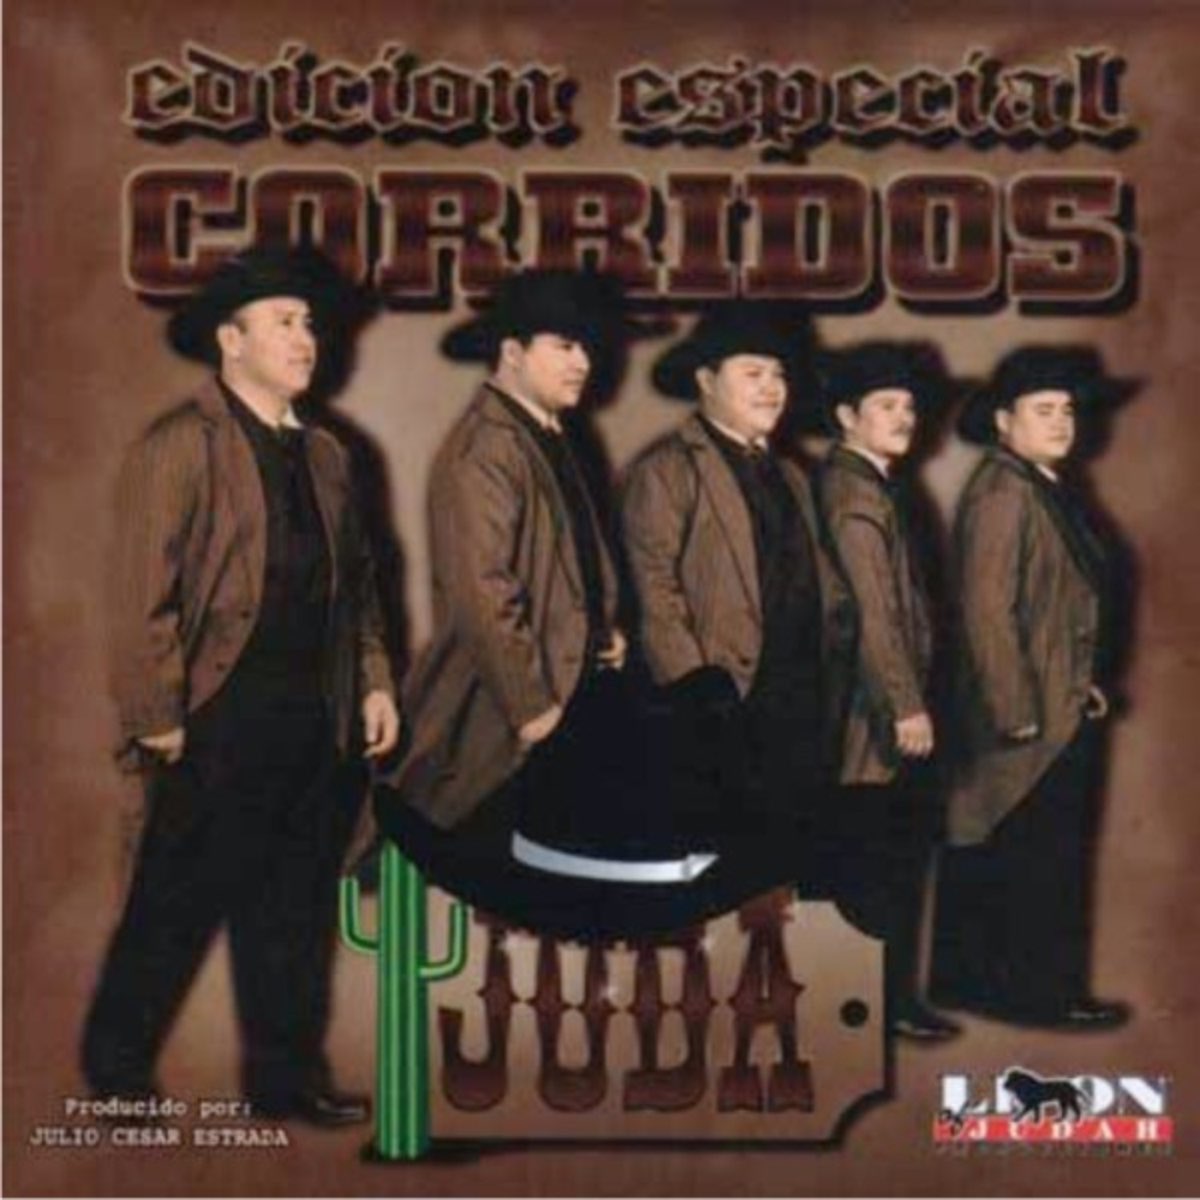 Edicion Especial Corridos, vol. 1 de Juda en Apple Music